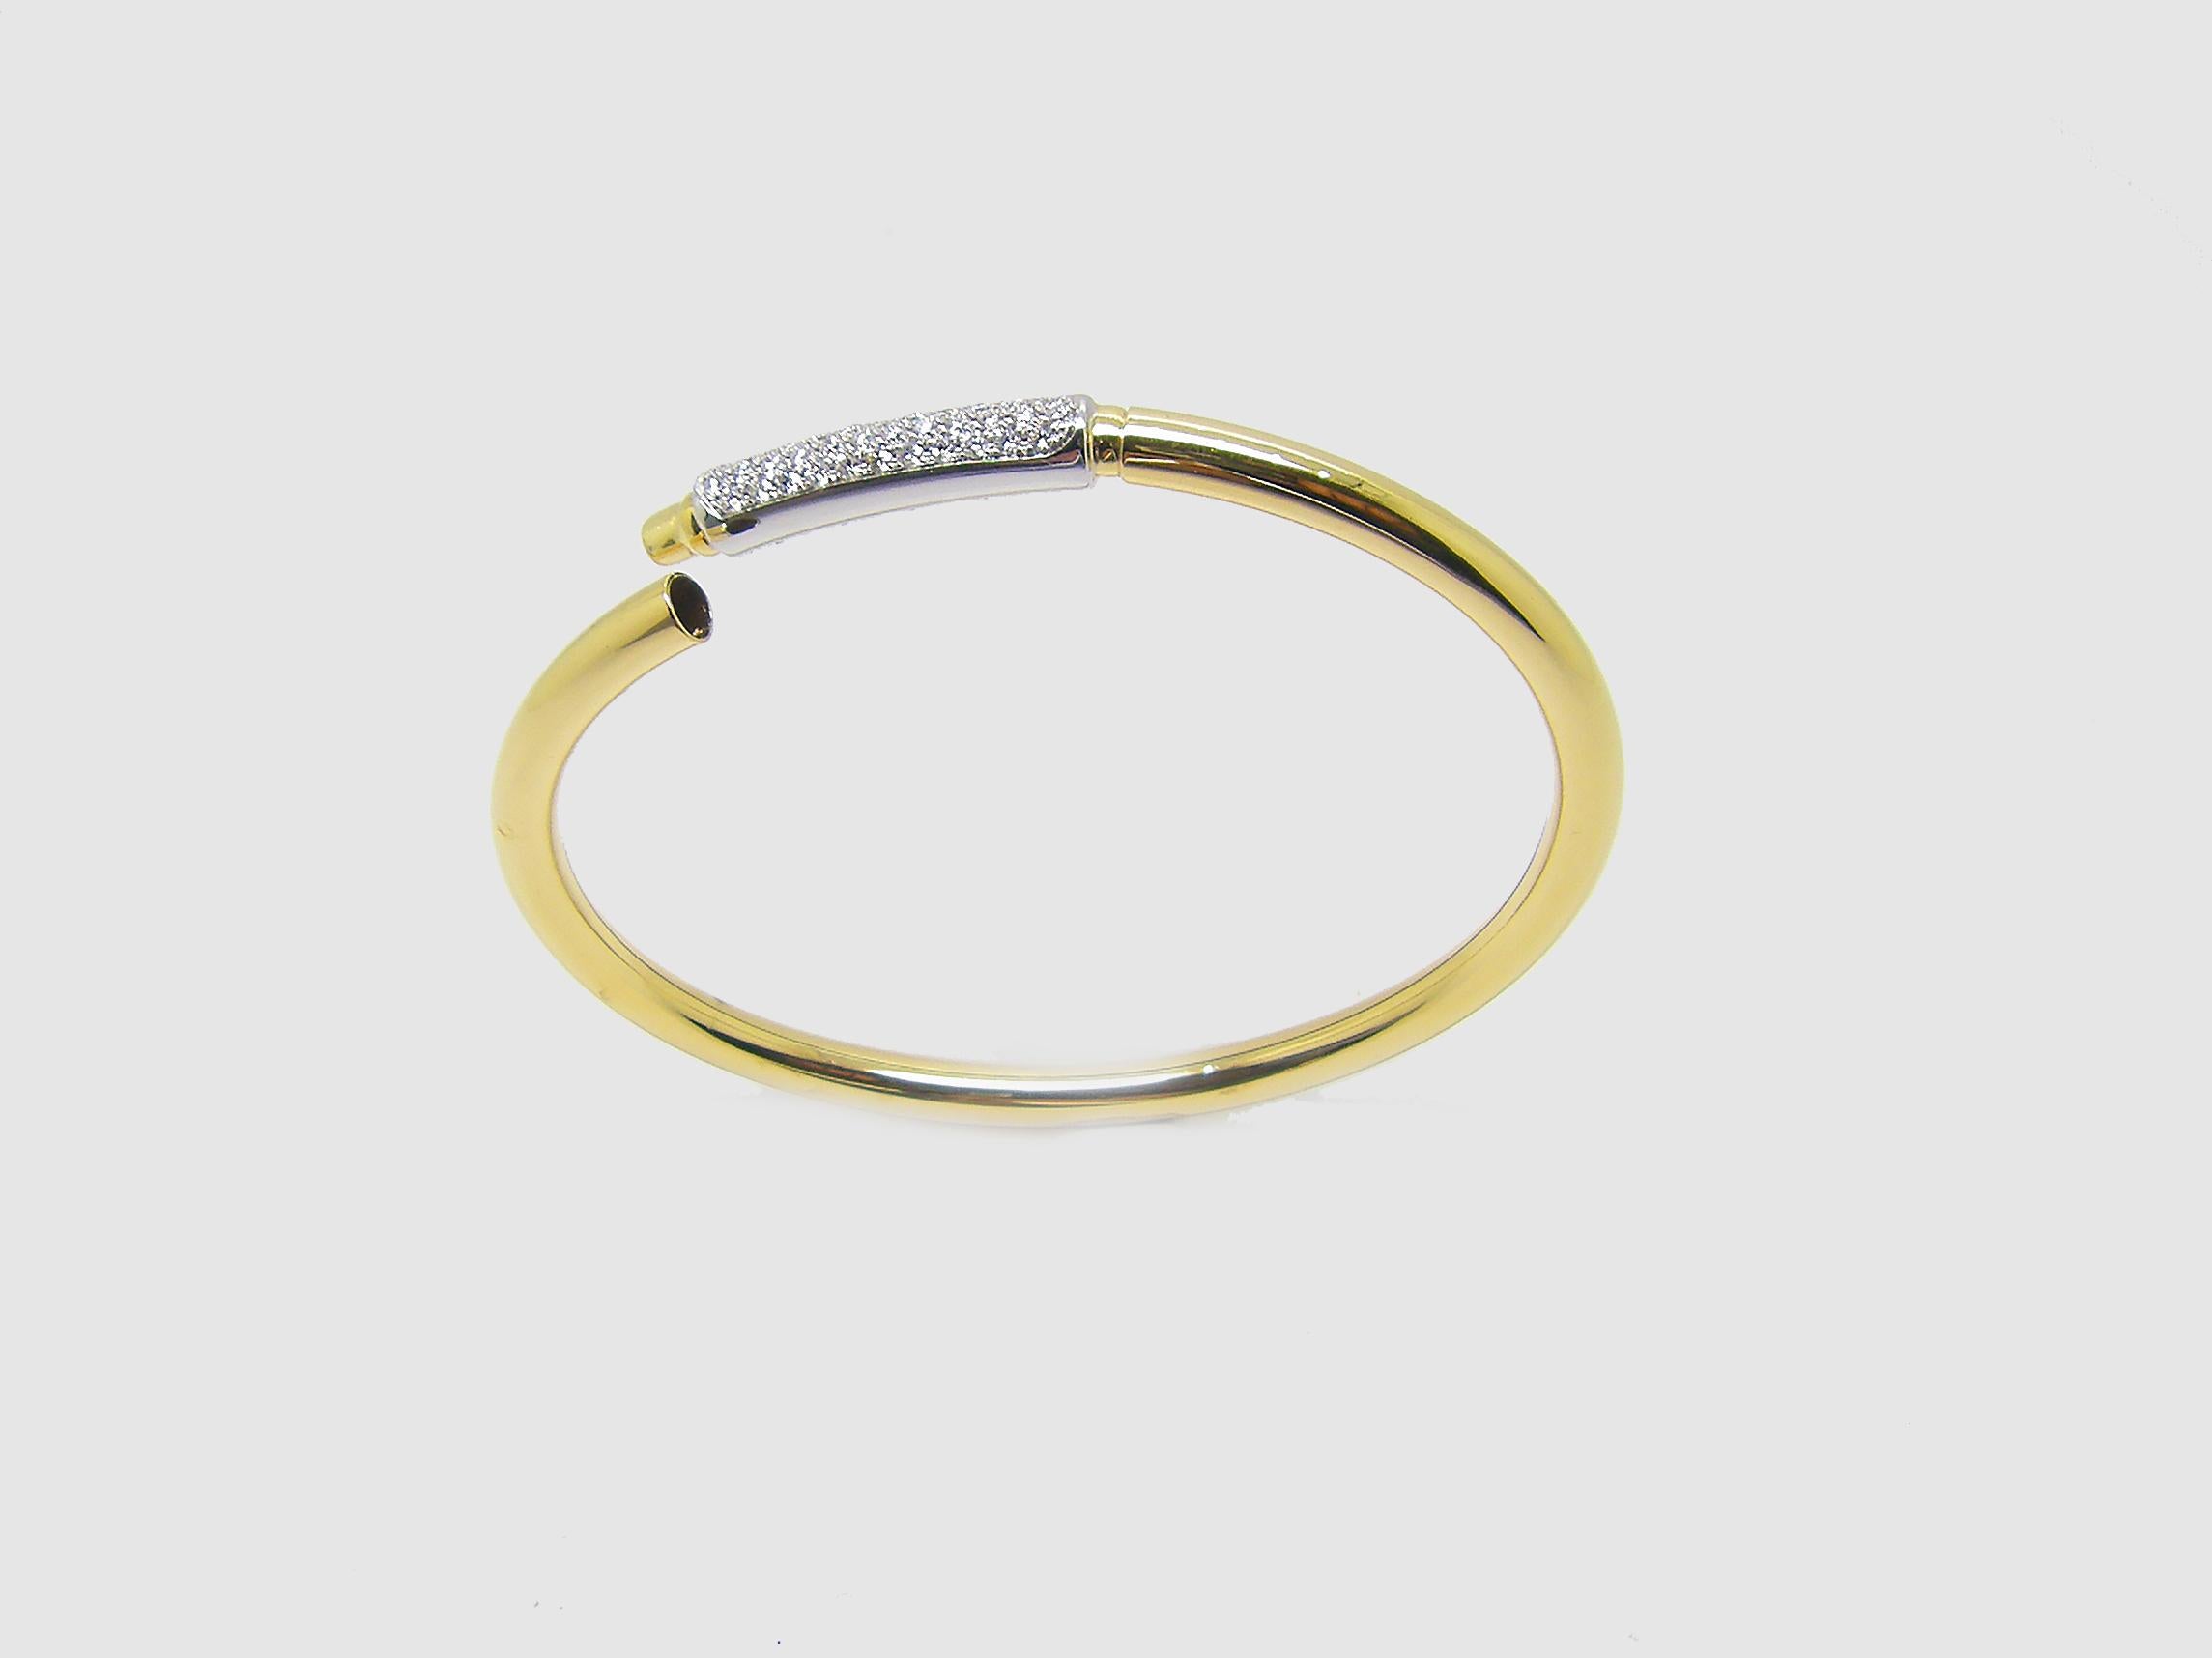 S.Georgios Designer Armreif Manschette Armband ist benutzerdefinierte aus Gelb-und Weißgold 18 Karat. Der wunderschöne Armreif hat weiße Diamanten im Brillantschliff mit einem Gesamtgewicht von 0,44 Karat, die mikroskopisch auf einem Barren aus